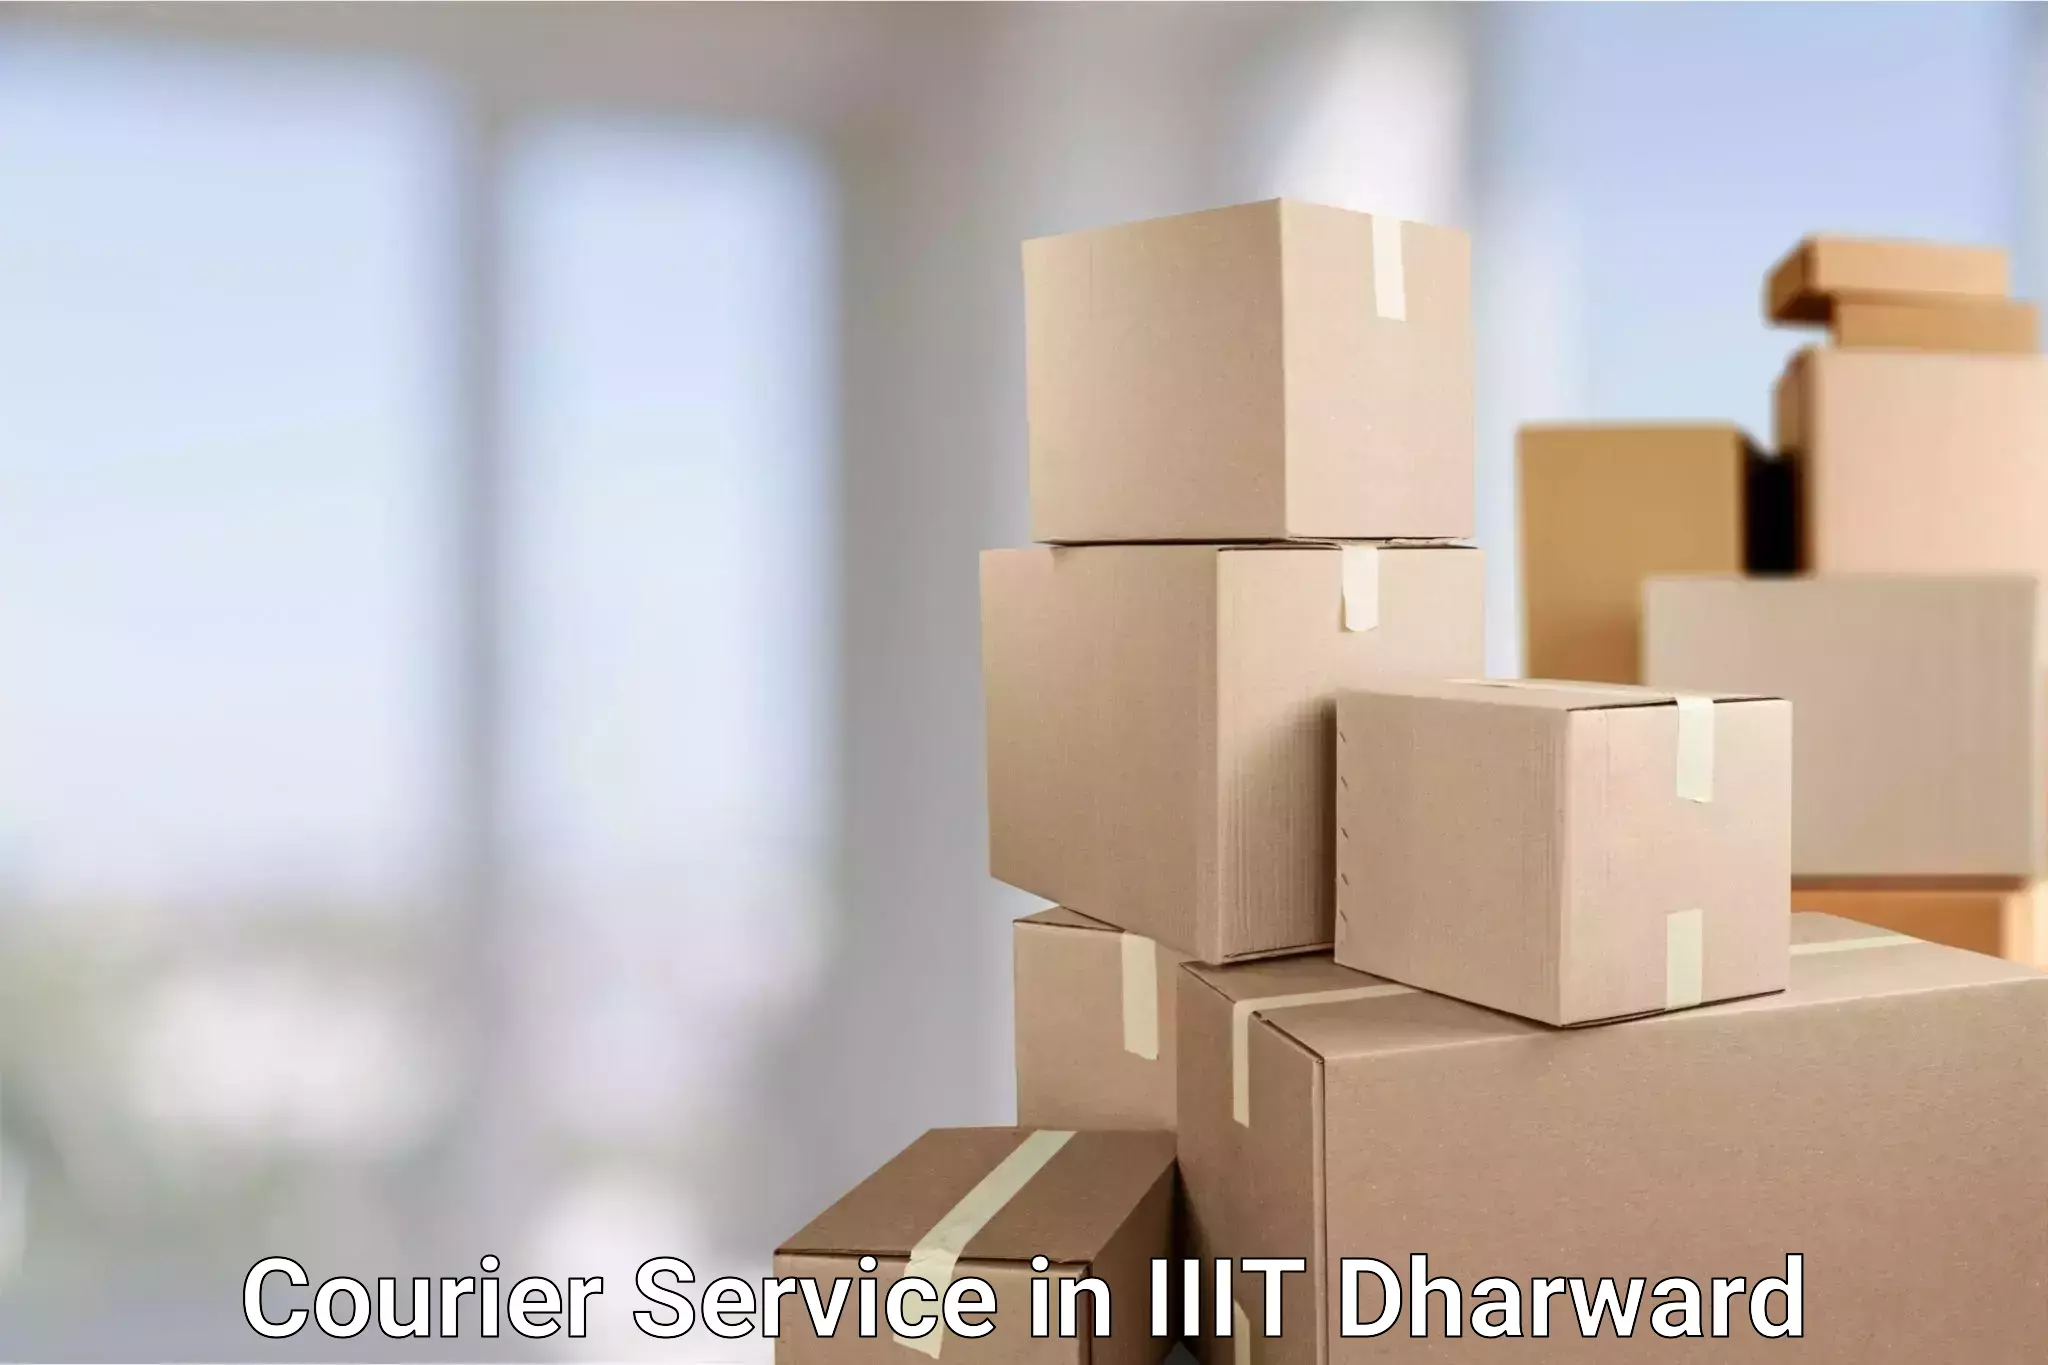 Flexible delivery scheduling in IIIT Dharward